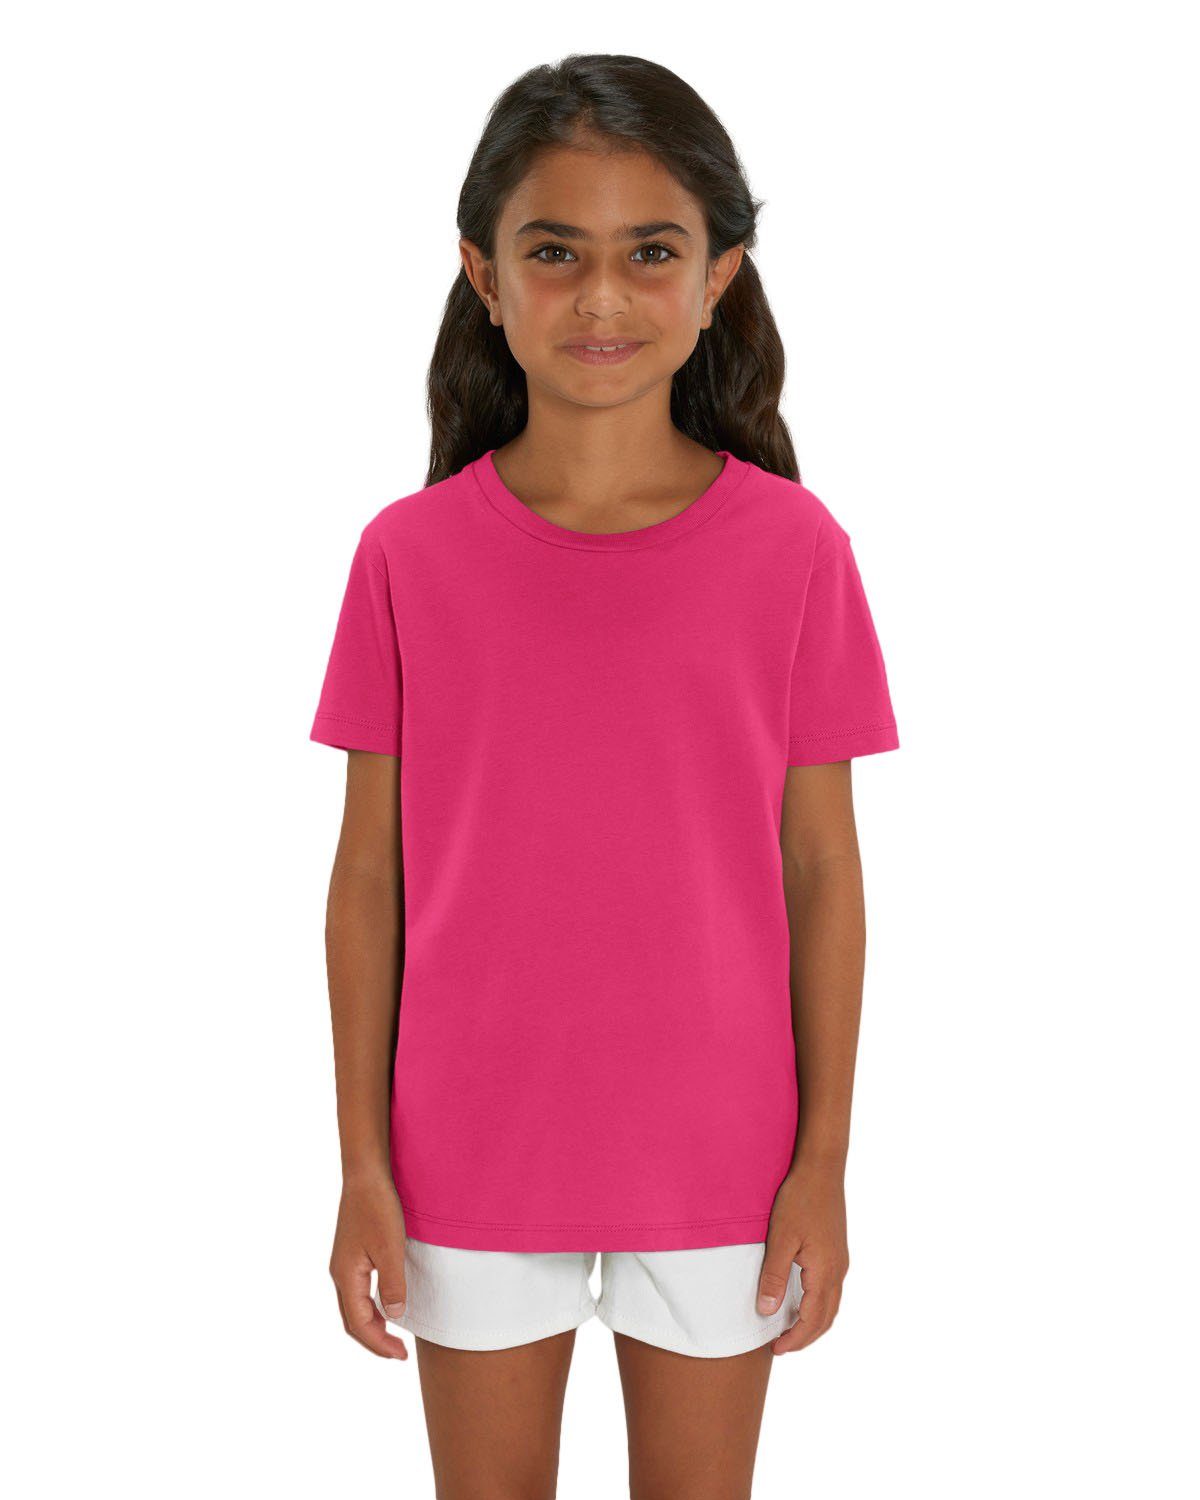 Hilltop T-Shirt »Hochwertiges Kinder T-Shirt aus 100% Bio-Baumwolle für  Mädchen und Jungen. Eignet sich hervorragend zum bedrucken. (z.B.: mit  Transfer-folien/Textilfolien)«